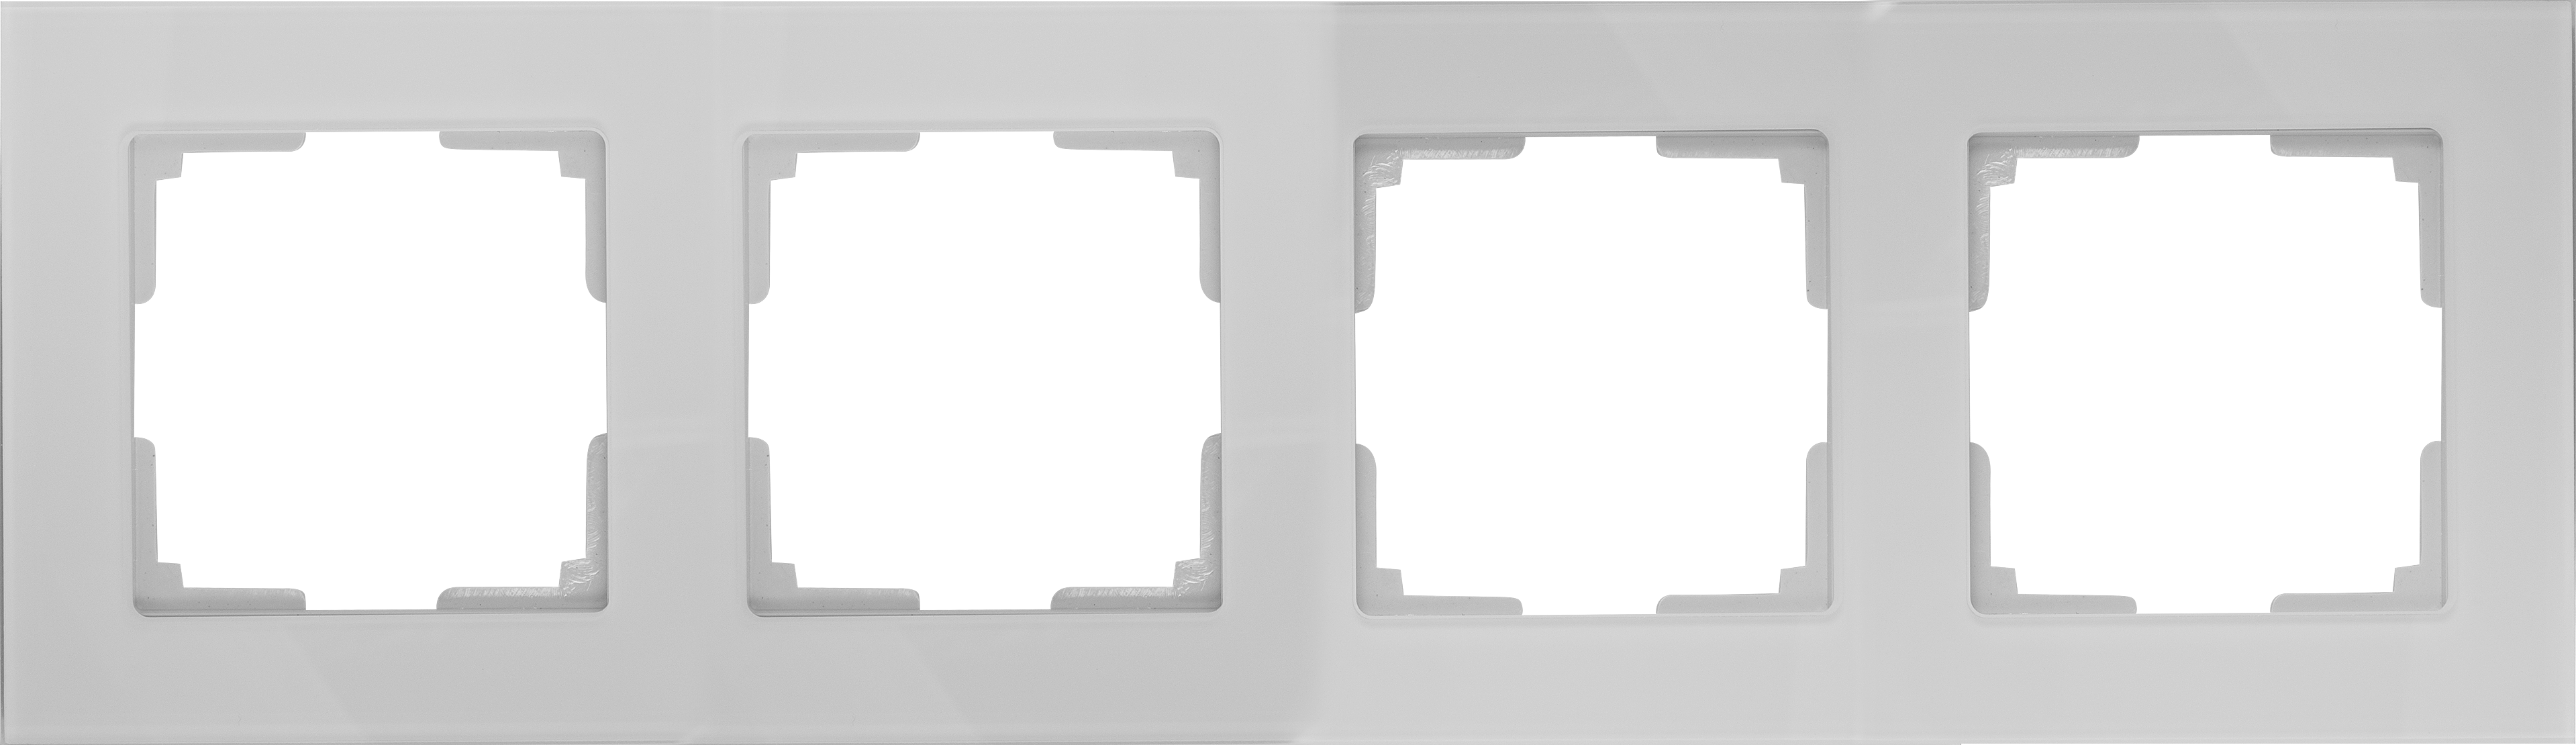 17781608 Рамка для розеток и выключателей 4 поста стекло цвет белый Favorit STLM-0008578 WERKEL